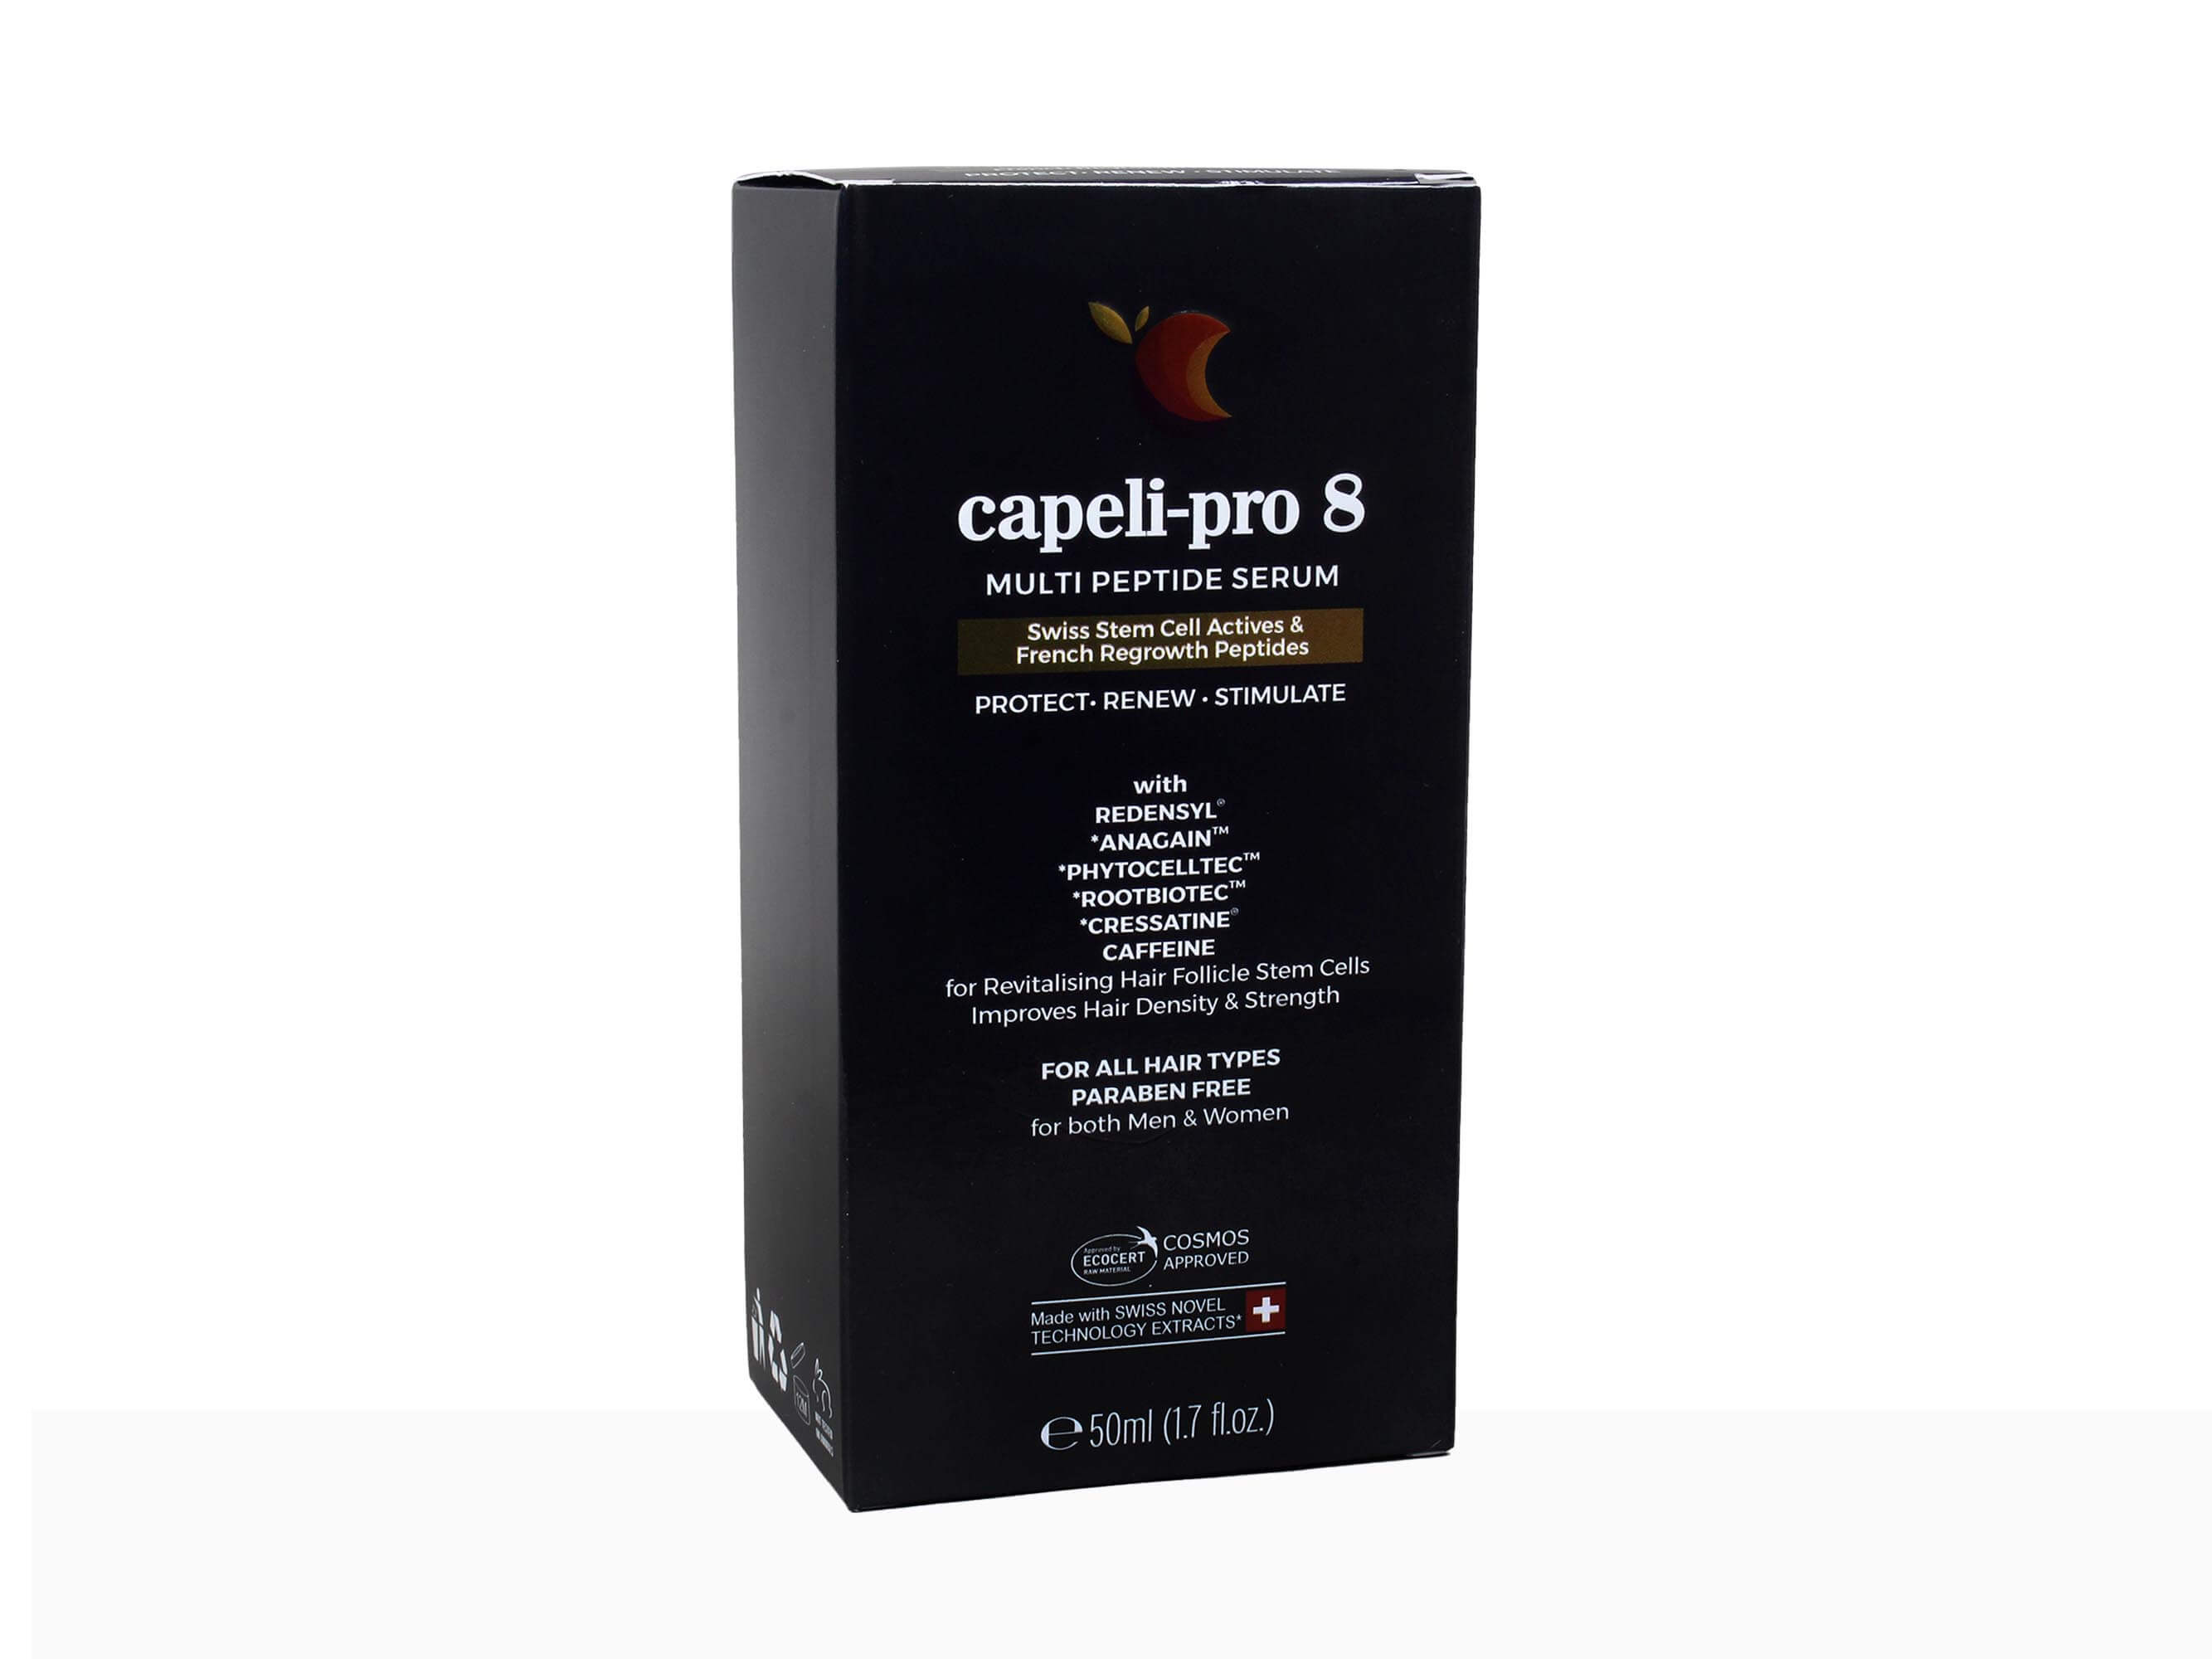 Capeli-Pro 8 Multi Peptide Serum - Clinikally